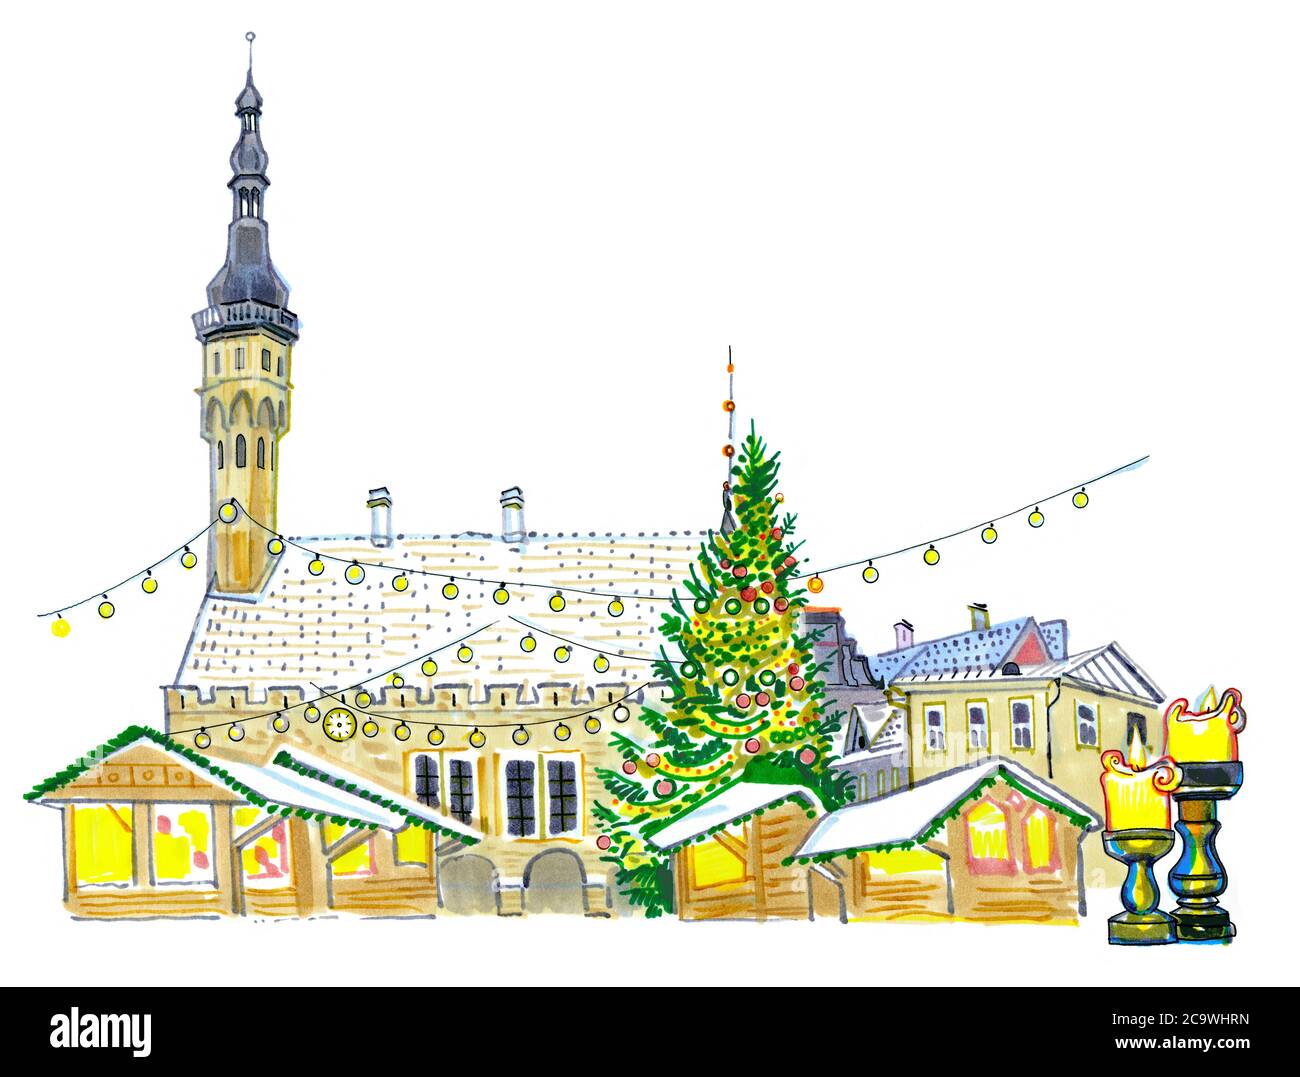 Marché de Noël à la place de l'hôtel de ville de Tallinn, Estonie. Arbre du nouvel an, illuminations de vacances, bougies, neige sur les toits. Dessiné à la main et esquissé Banque D'Images